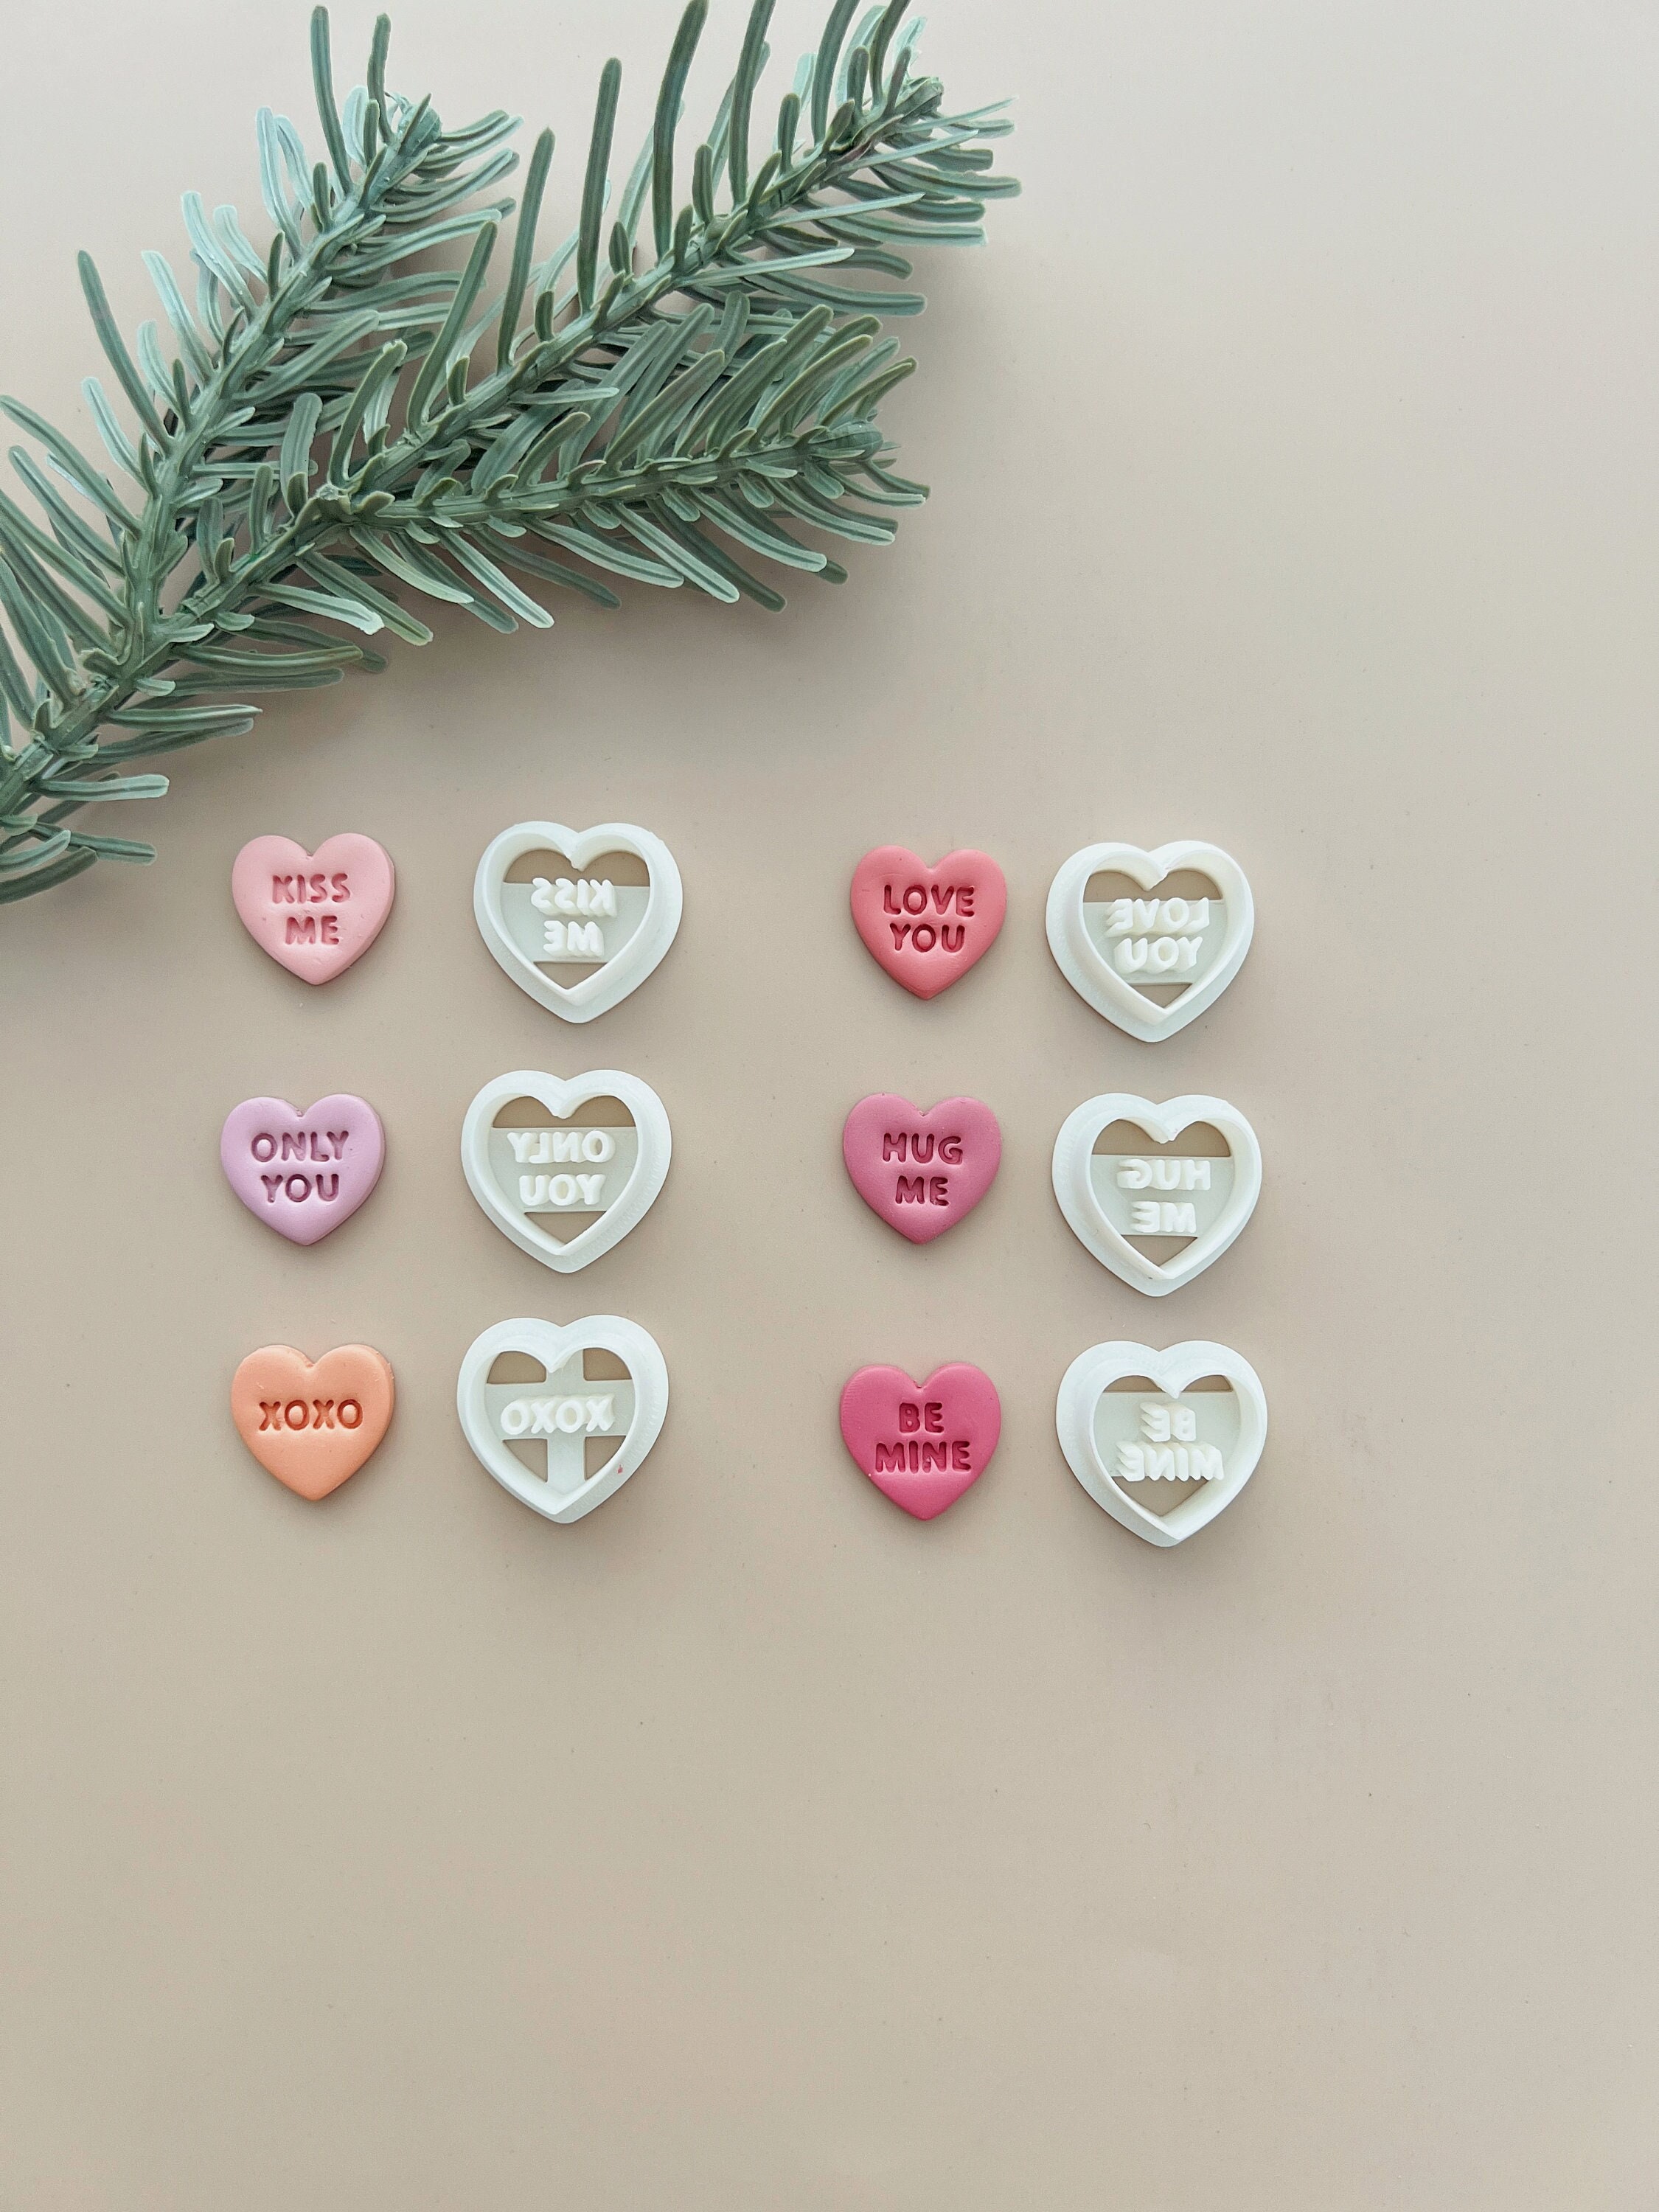 Conversation Heart - Cutter – The Sweet Designs Shoppe